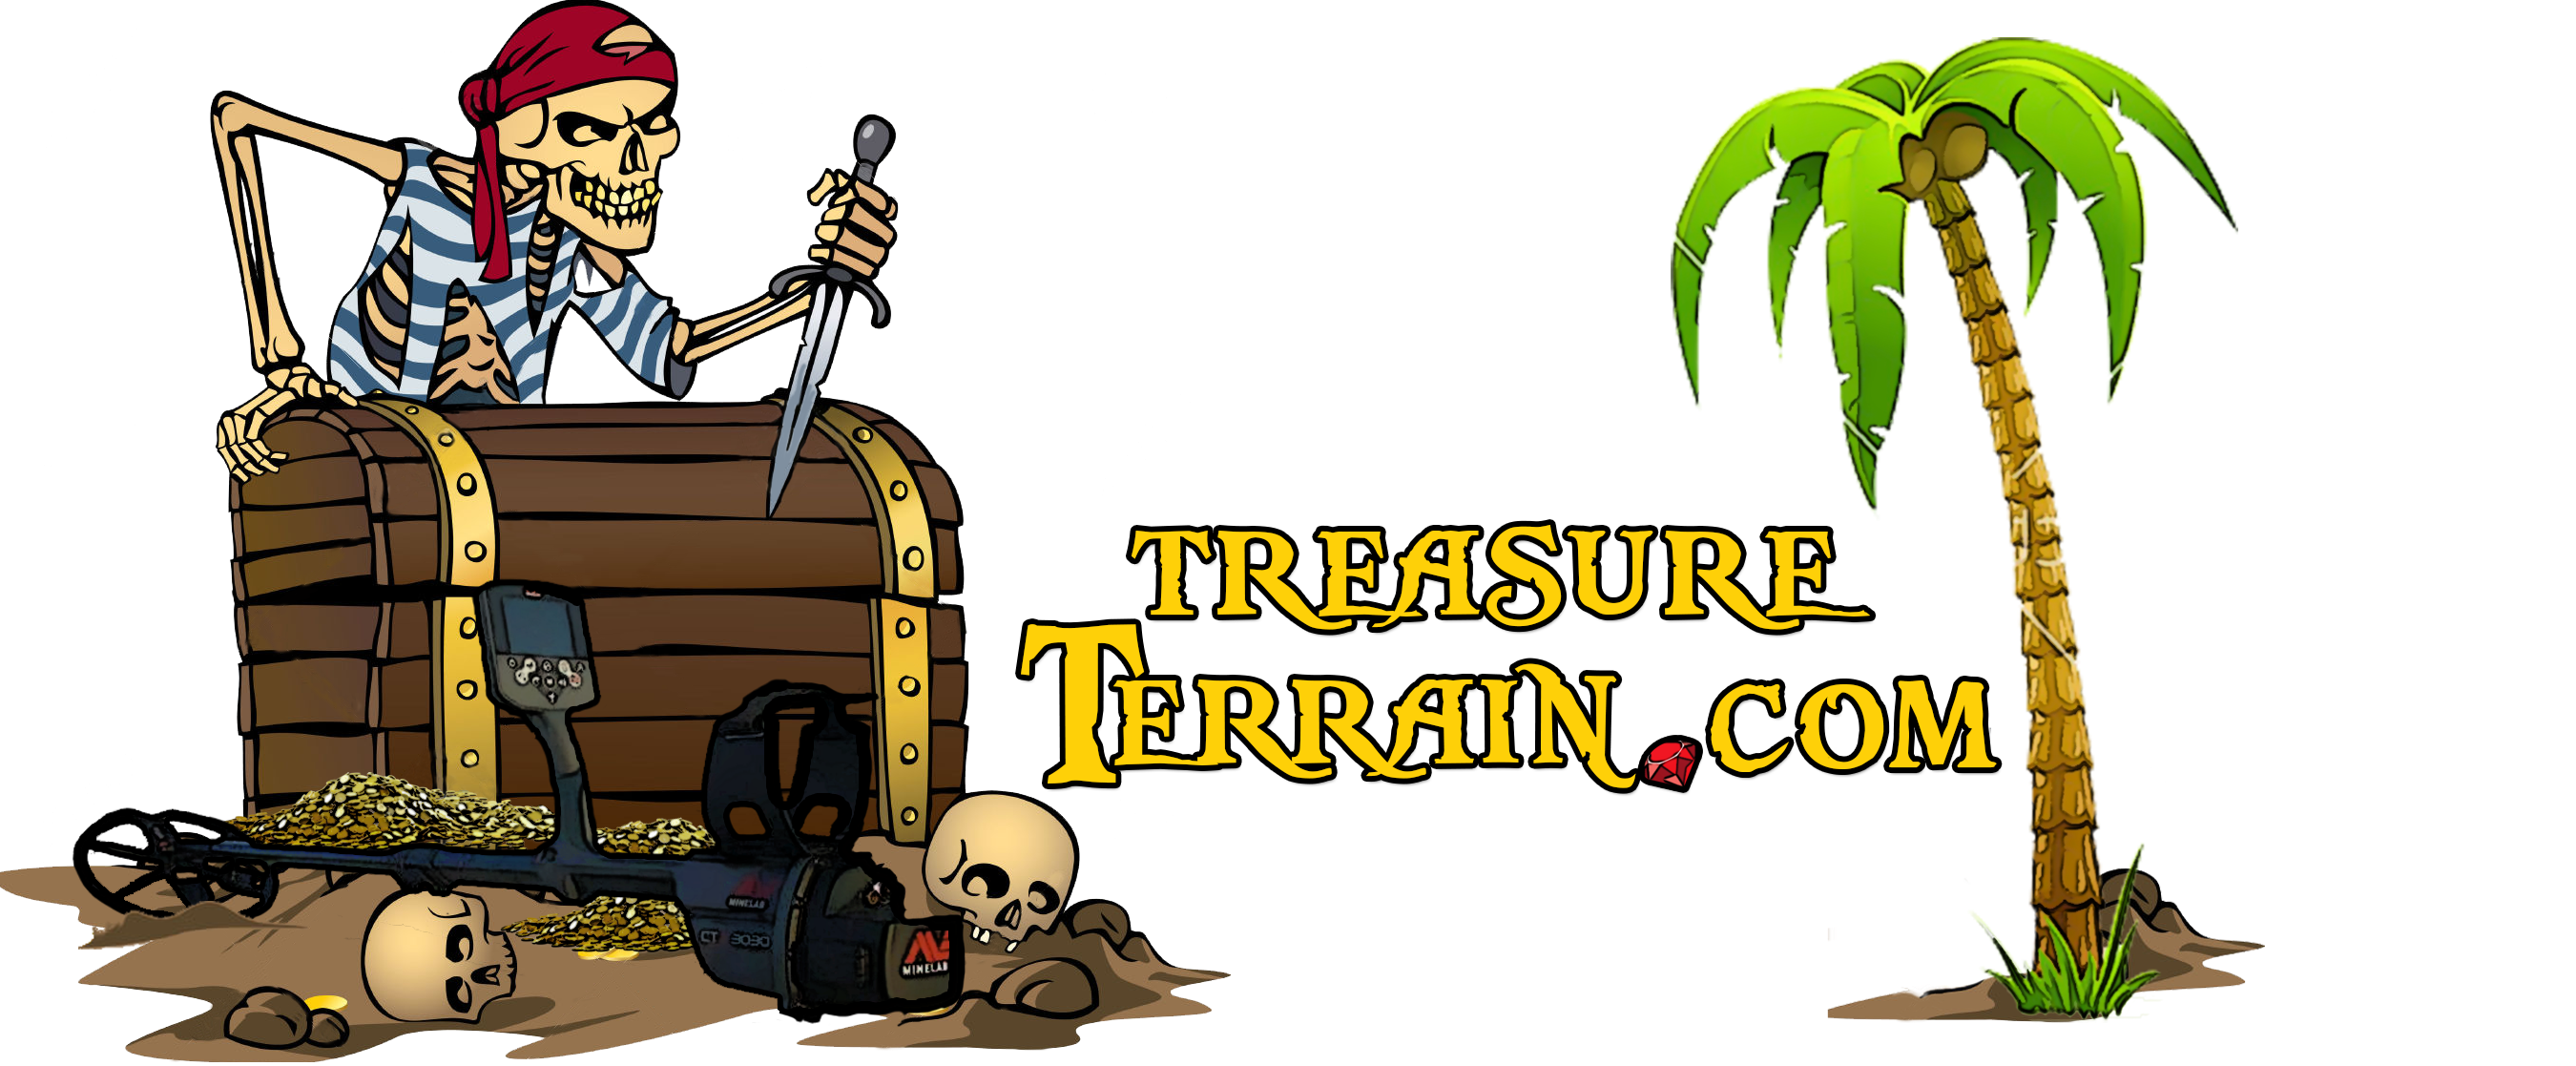 TreasureTerrain